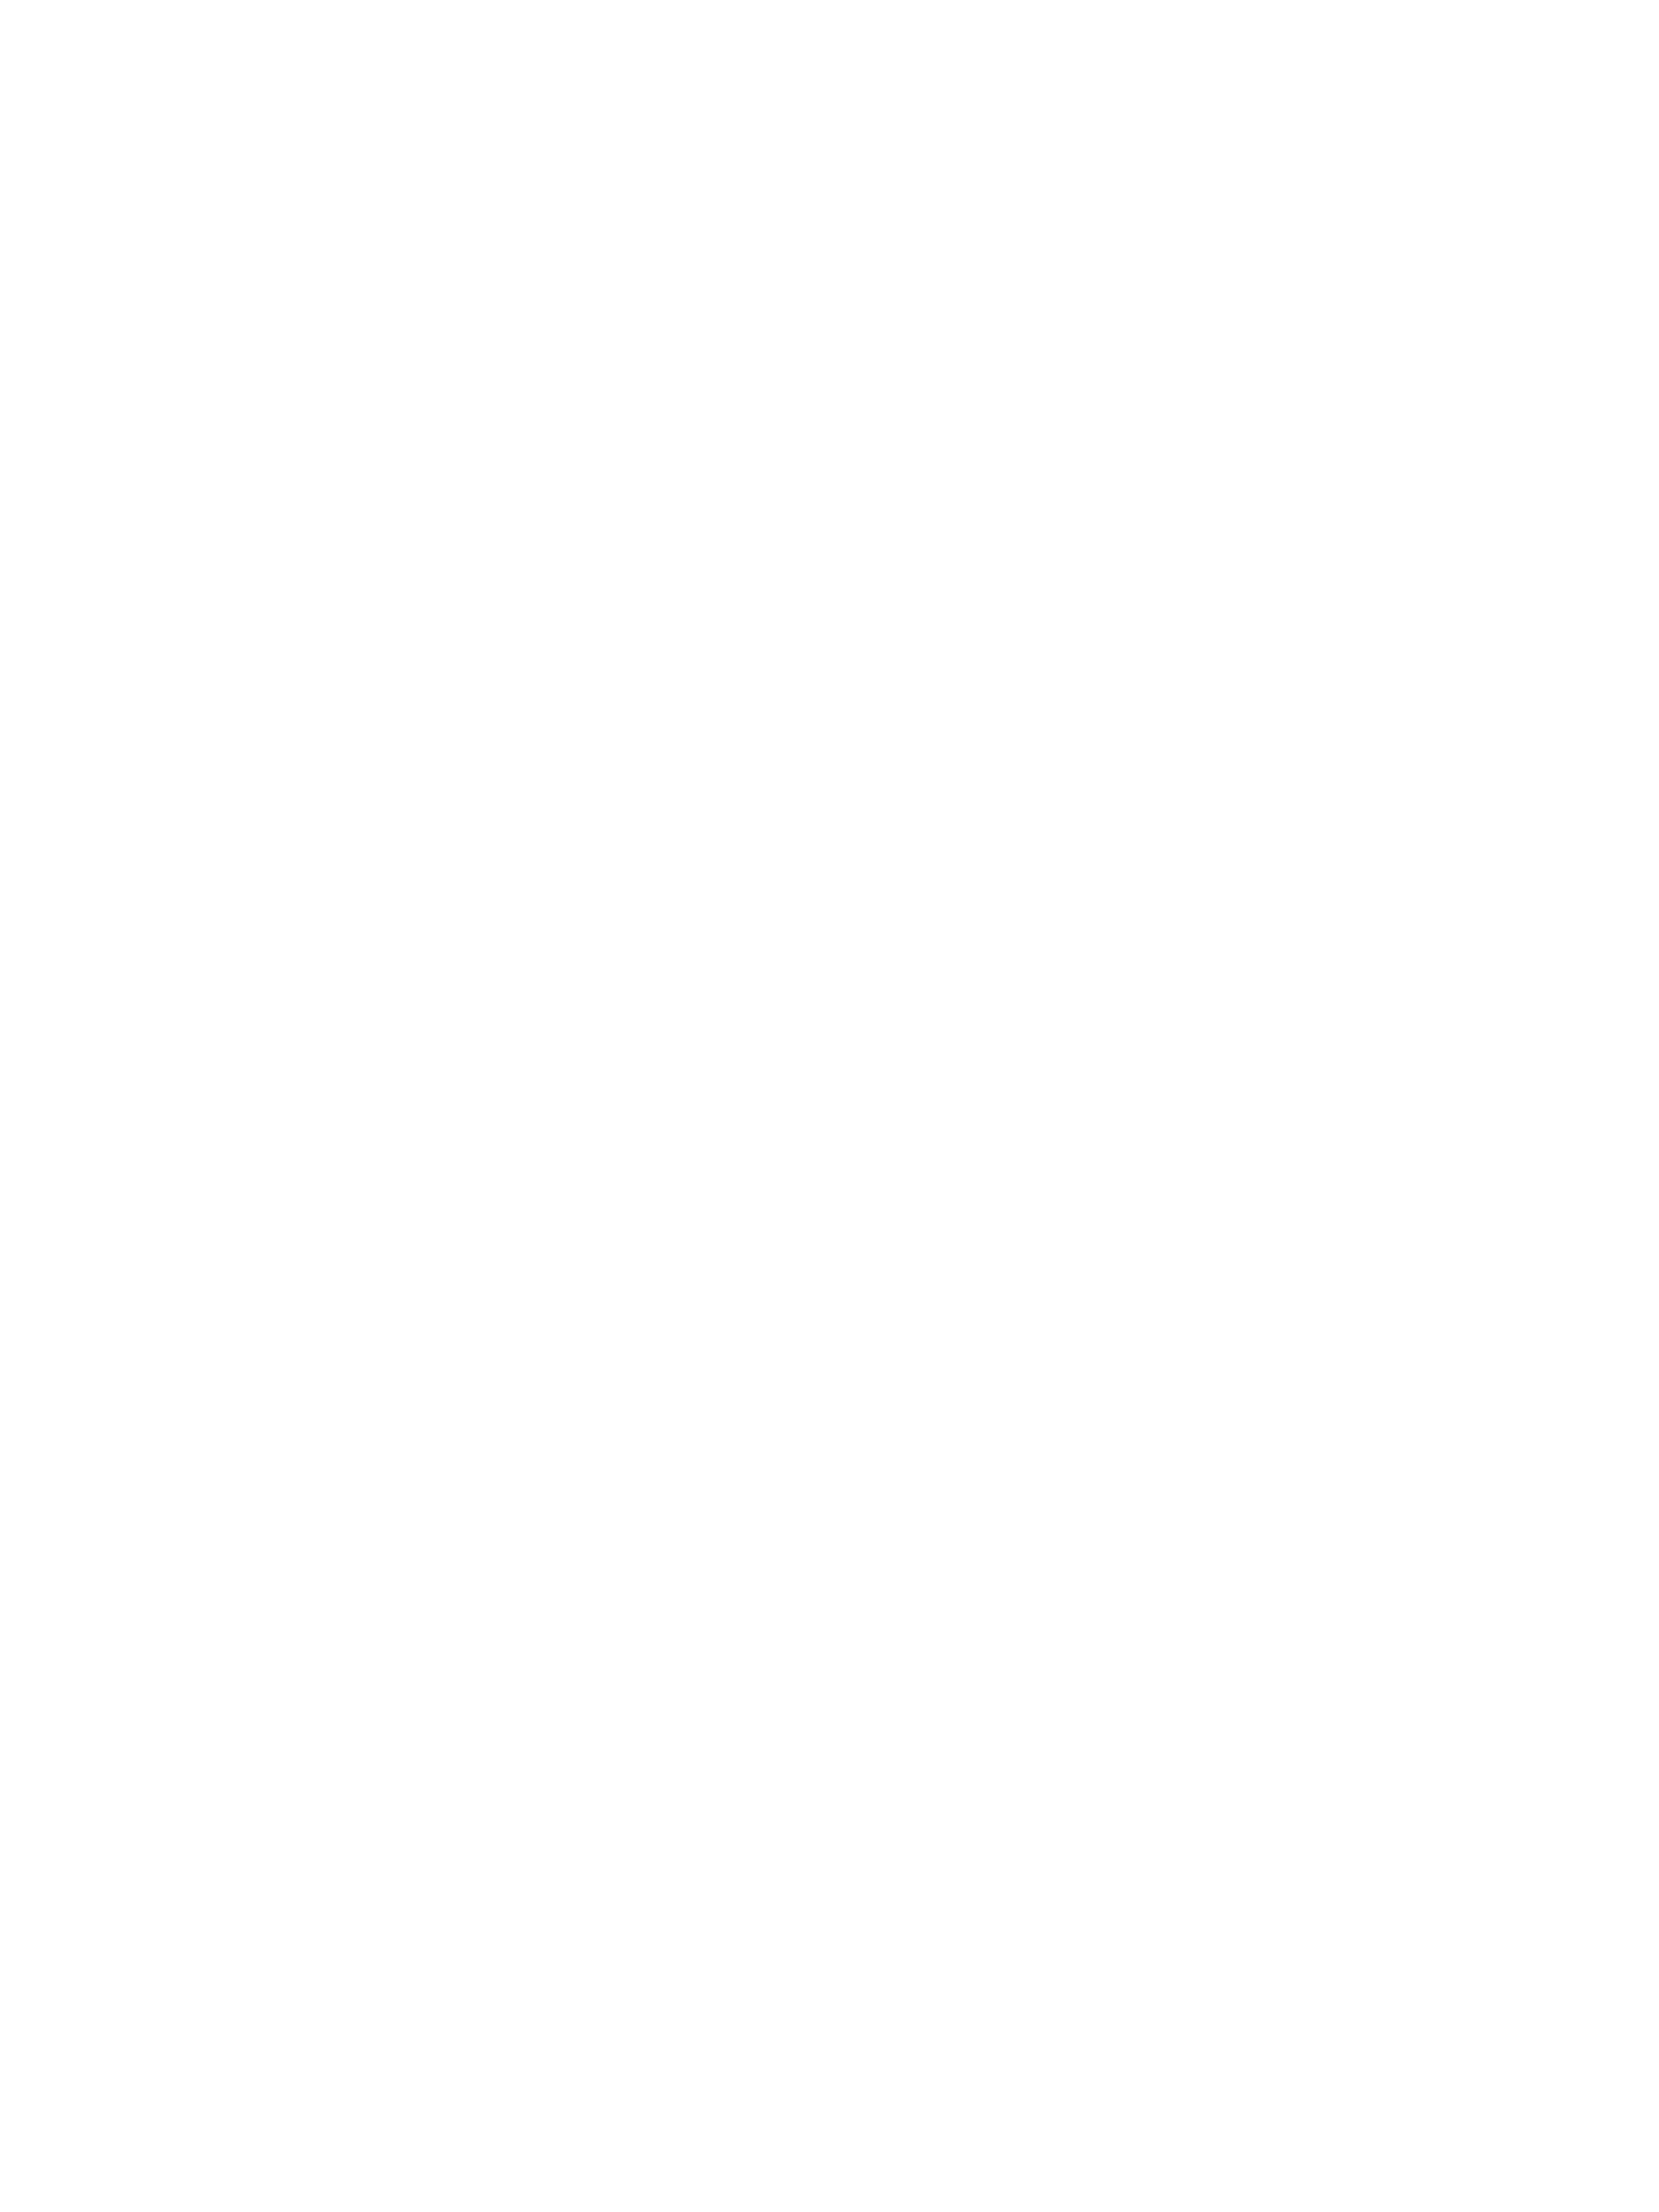 Июнь 2008, Аудитория МБФ - В.Атрохов, Н.Попова, Т.Поставнева (Балашова), И.Перминова (Торшина), Е.Змиевская (Гуданович), Б.григорьев